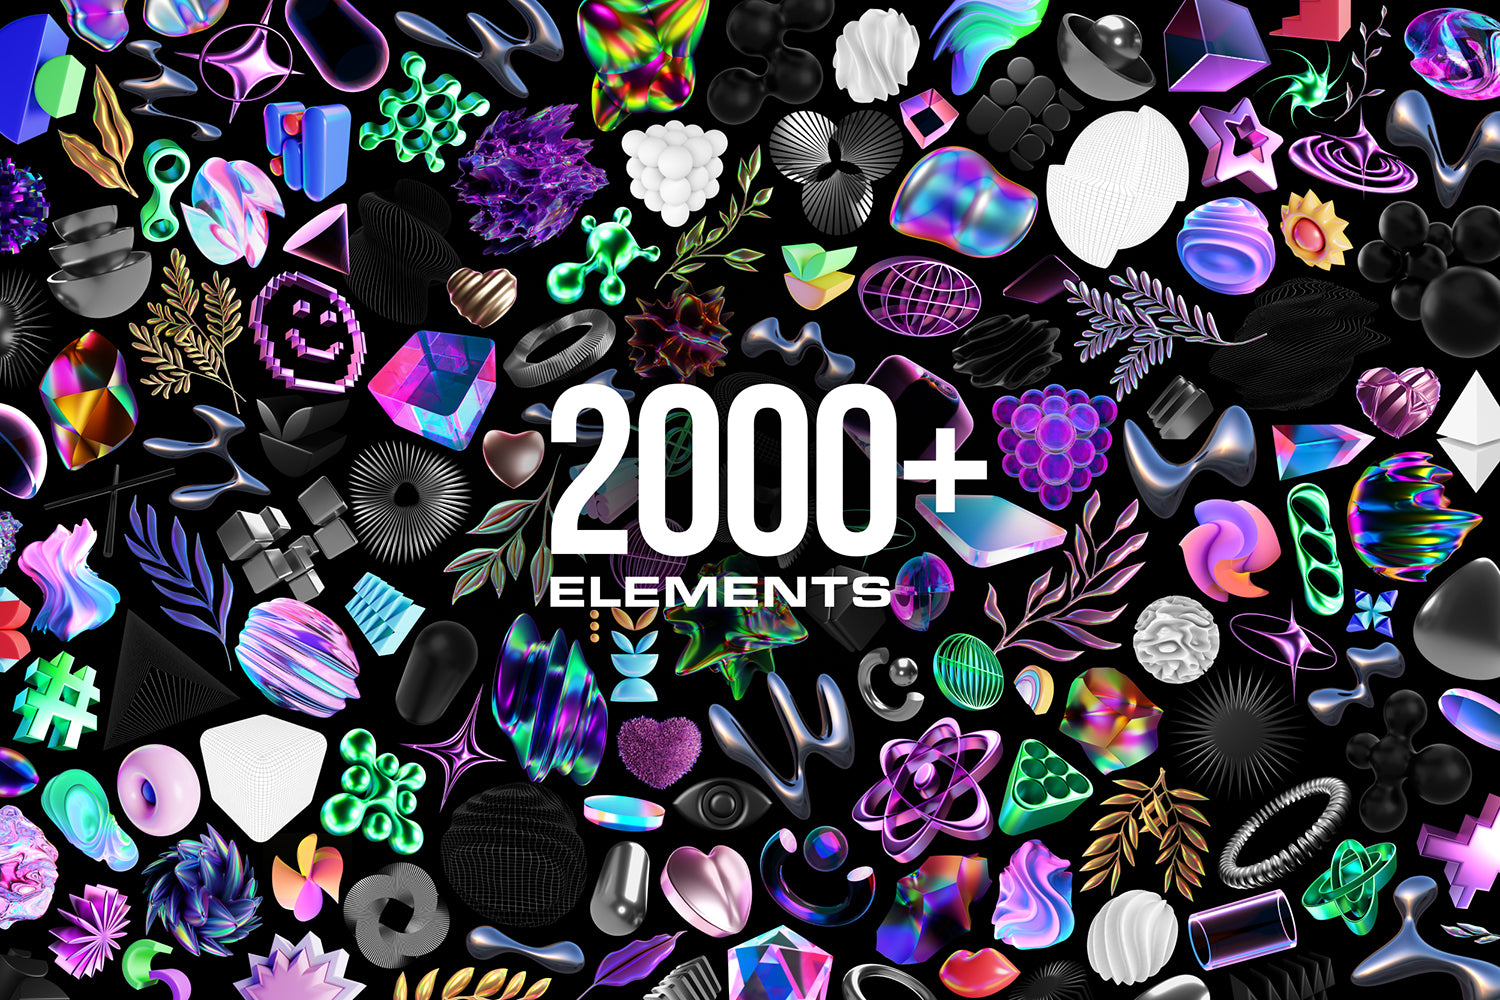 60% OFF - MASSIVE 3D BUNDLE - 2000+ elements